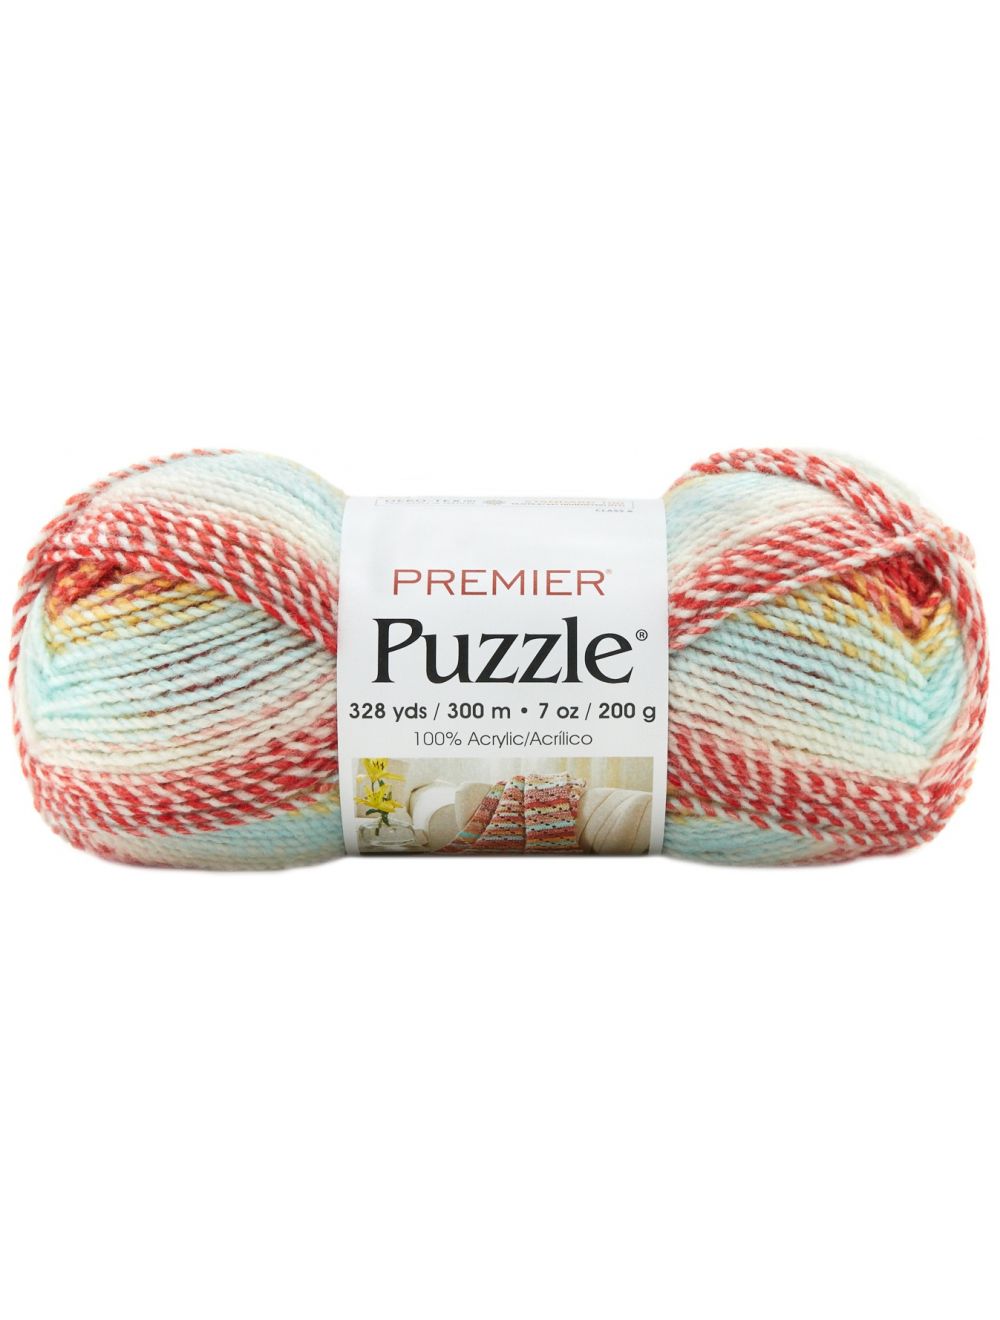 Premier Yarns Puzzle Yarn-Marbles